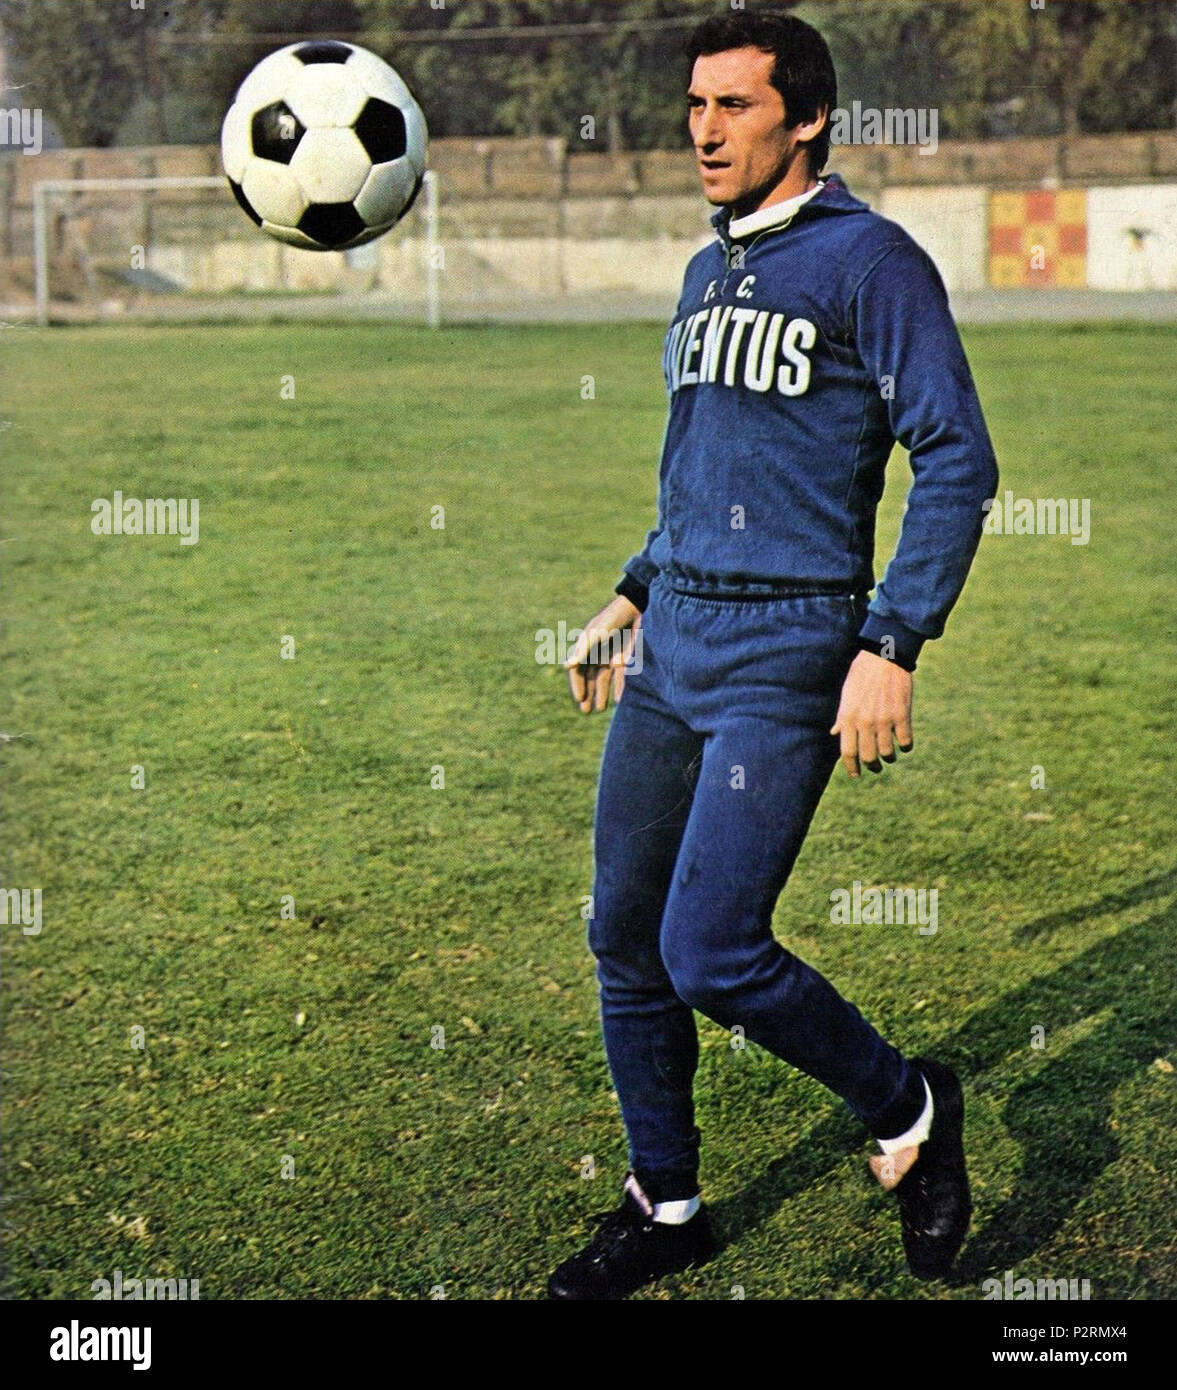 . Italiano: Il calciatore italiano Giuseppe Furino in allenamento alla Juventus nel 1974. ca. 1974. Unbekannt 44 FC Juventus - 1974 - Giuseppe Furino (Schulung) Stockfoto